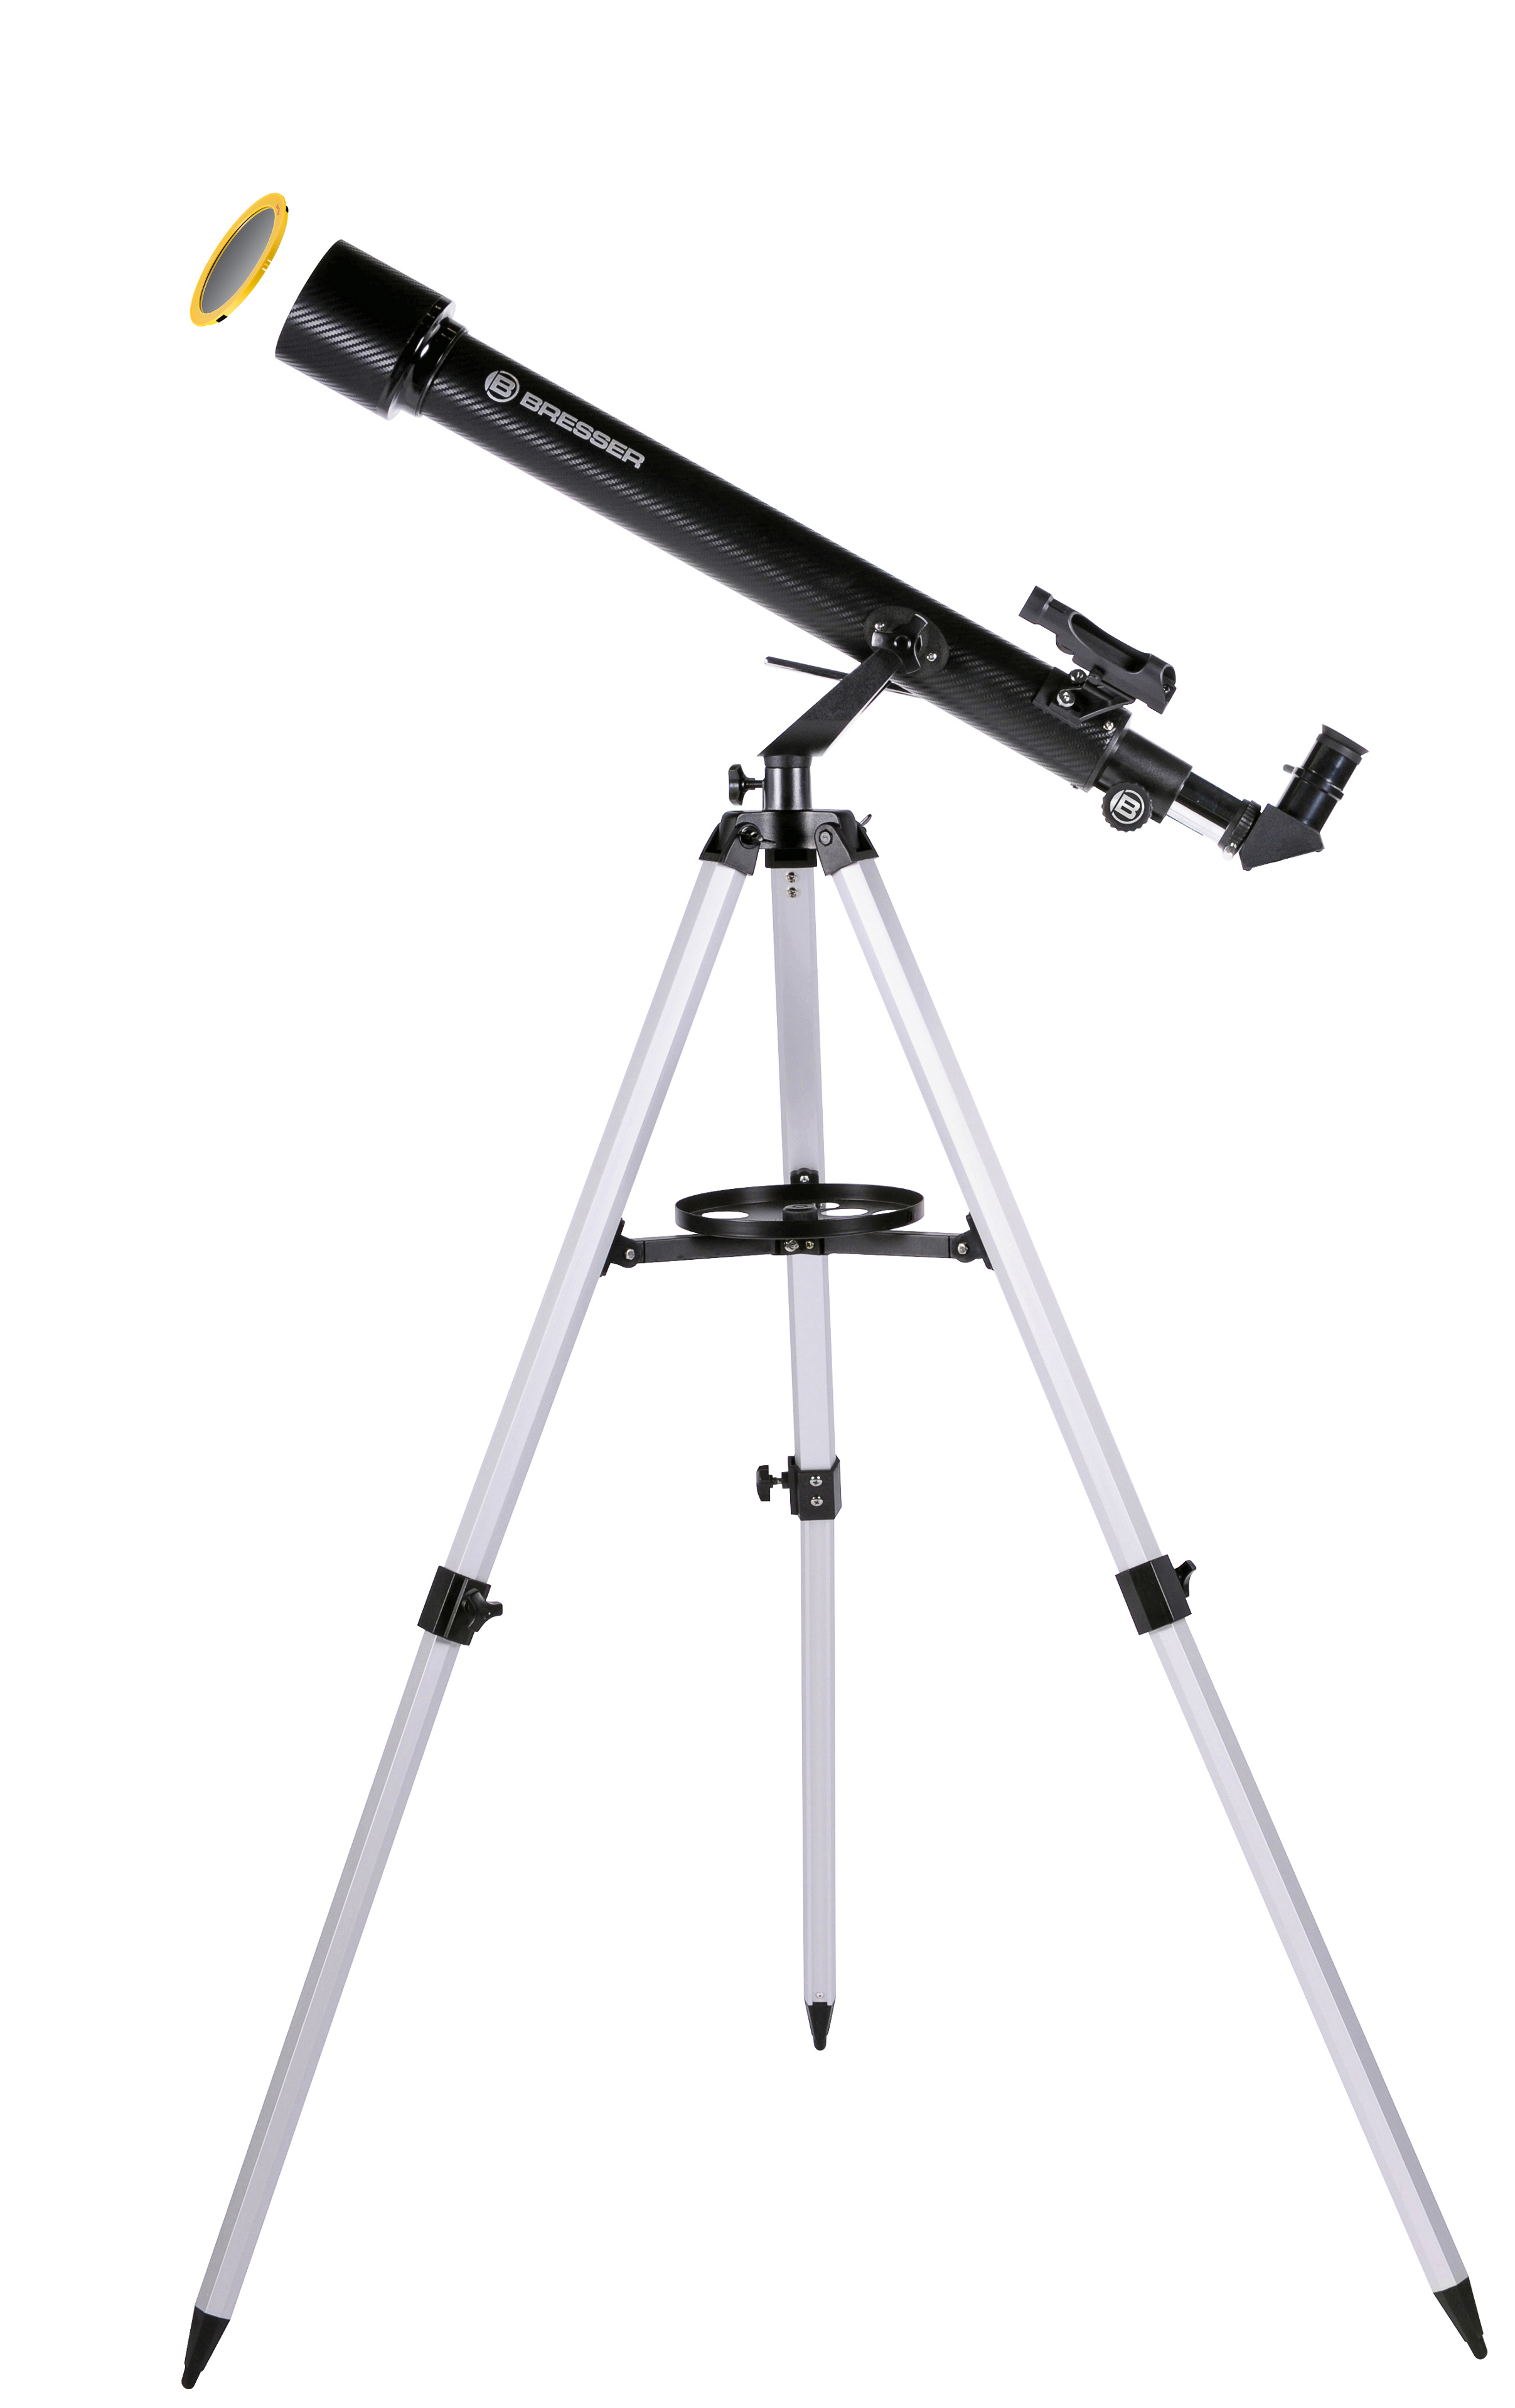 Télescope Bresser Solarix 76/350 avec filtre solaire intégré